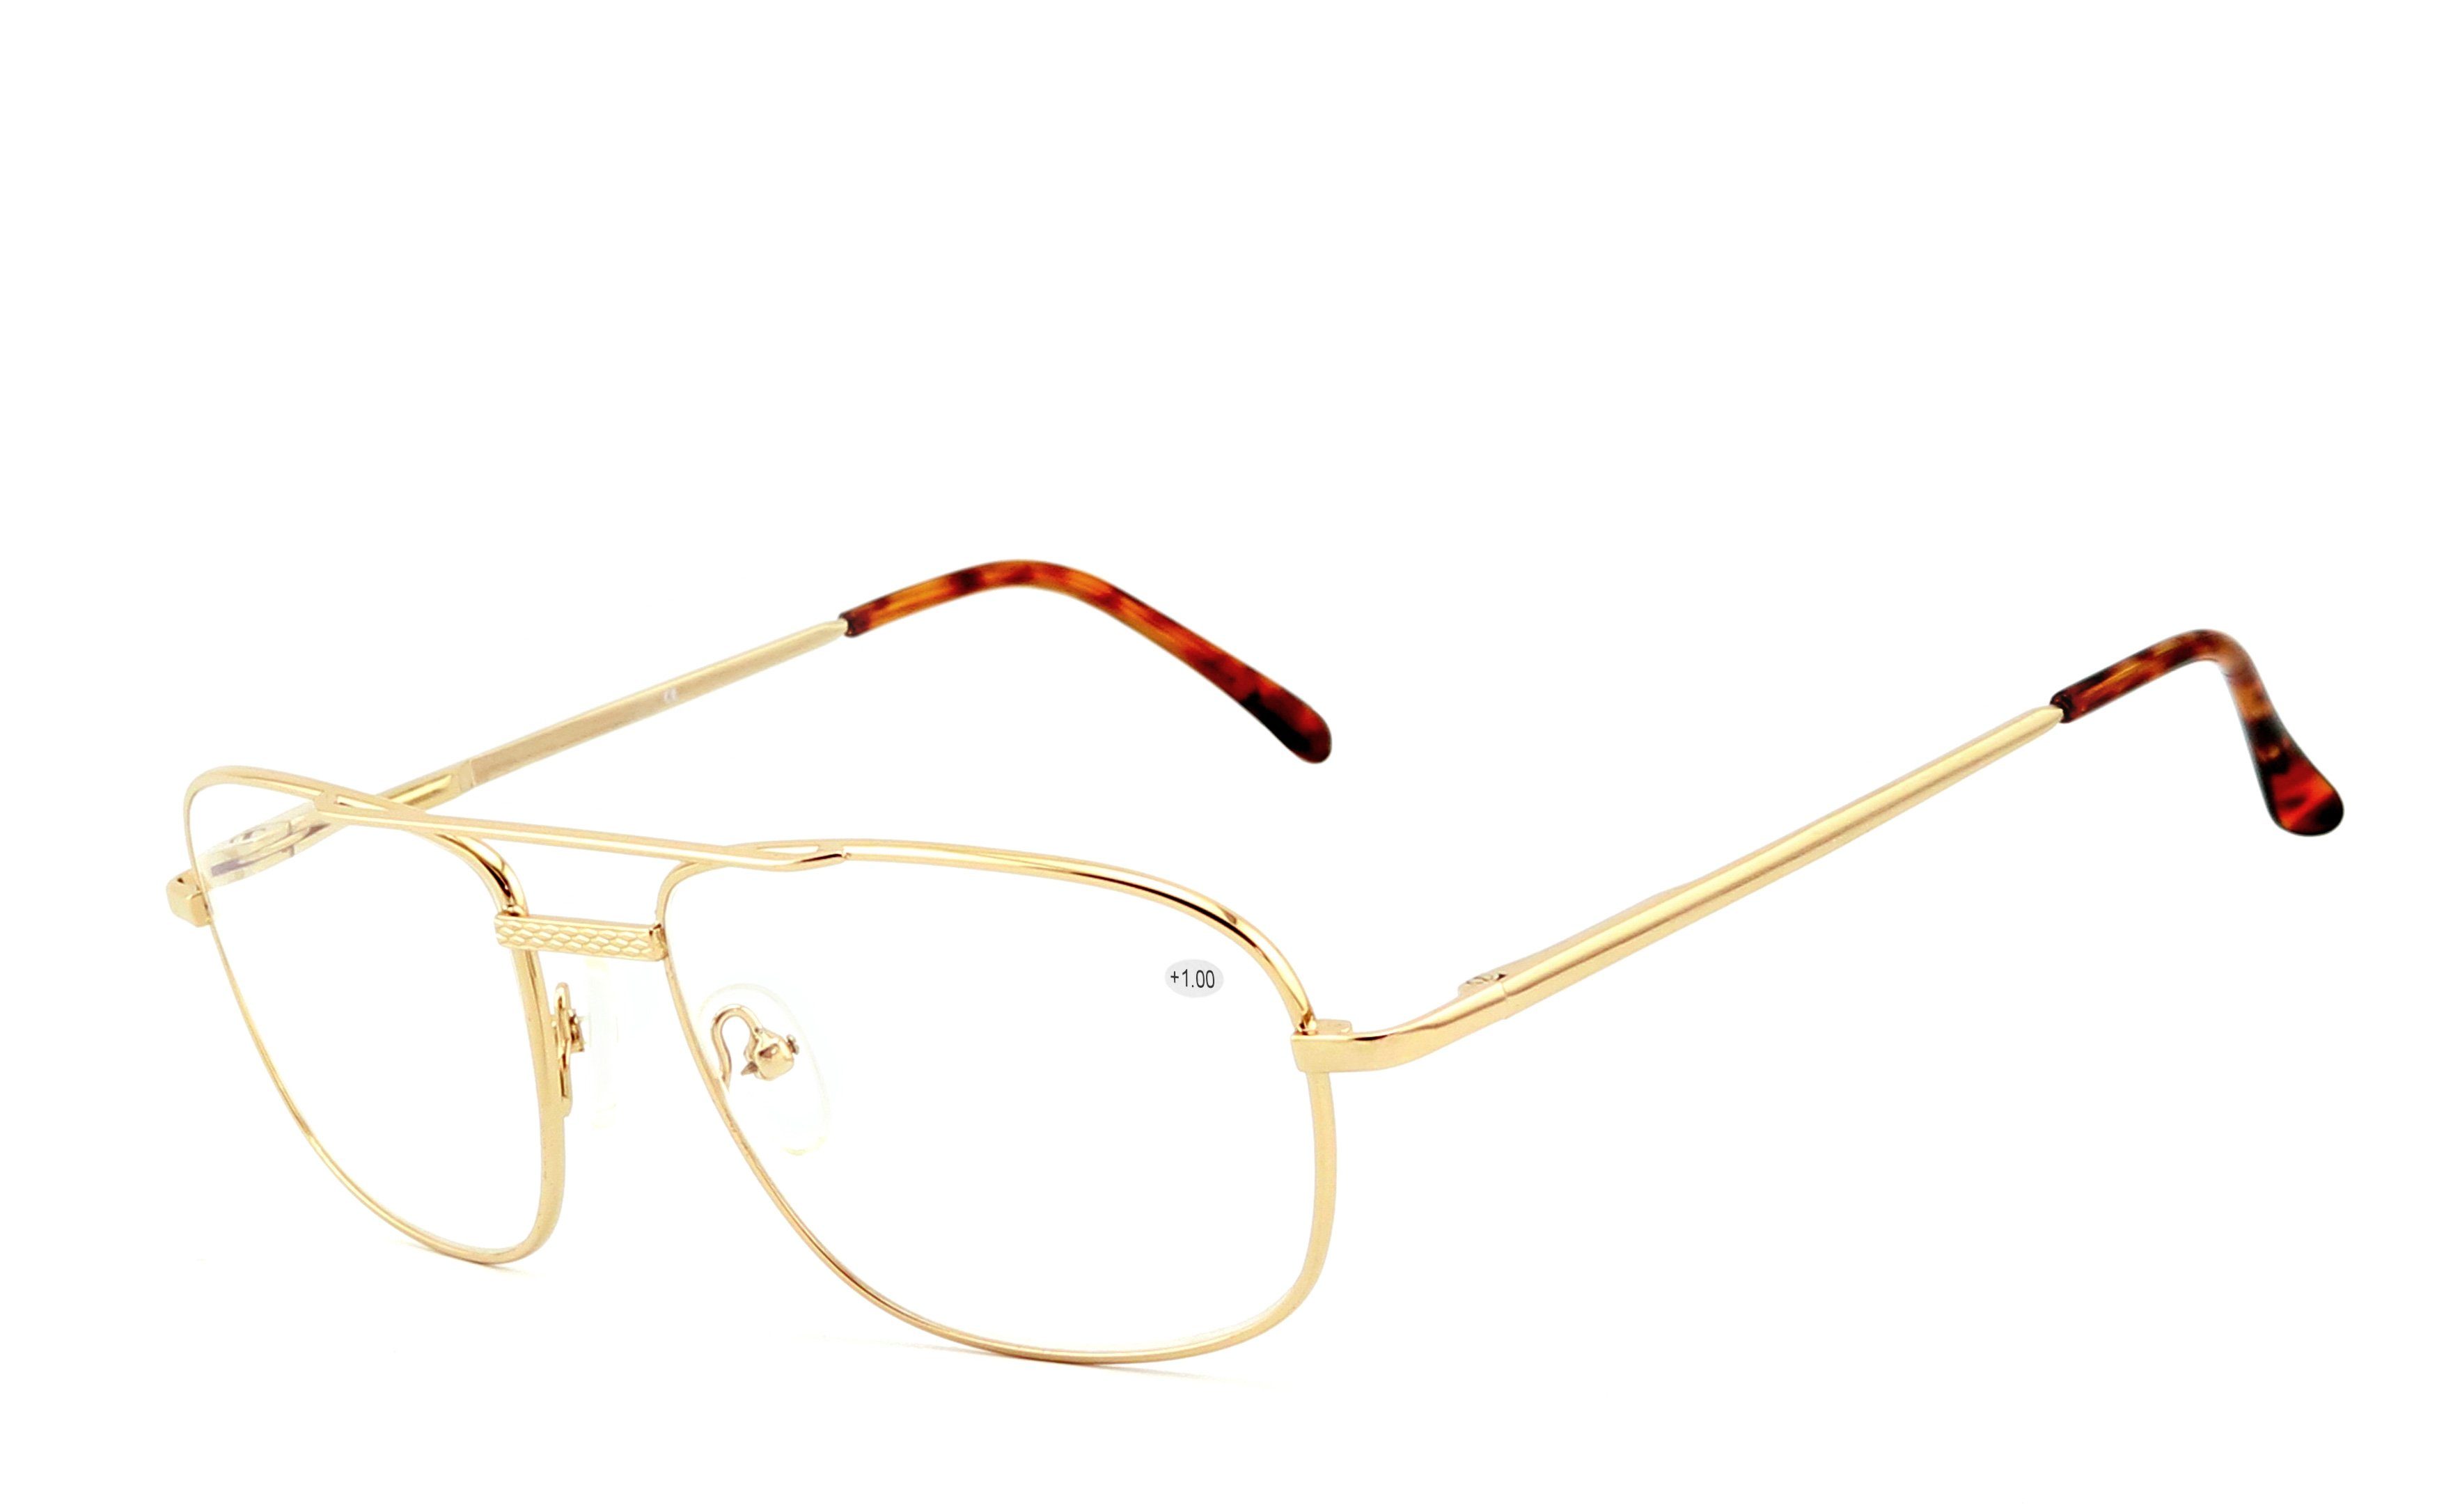 EYESTUFF Lesebrille Lesebrille 008 gold, hochwertigen mit Flex-Scharnieren Brillenbügel